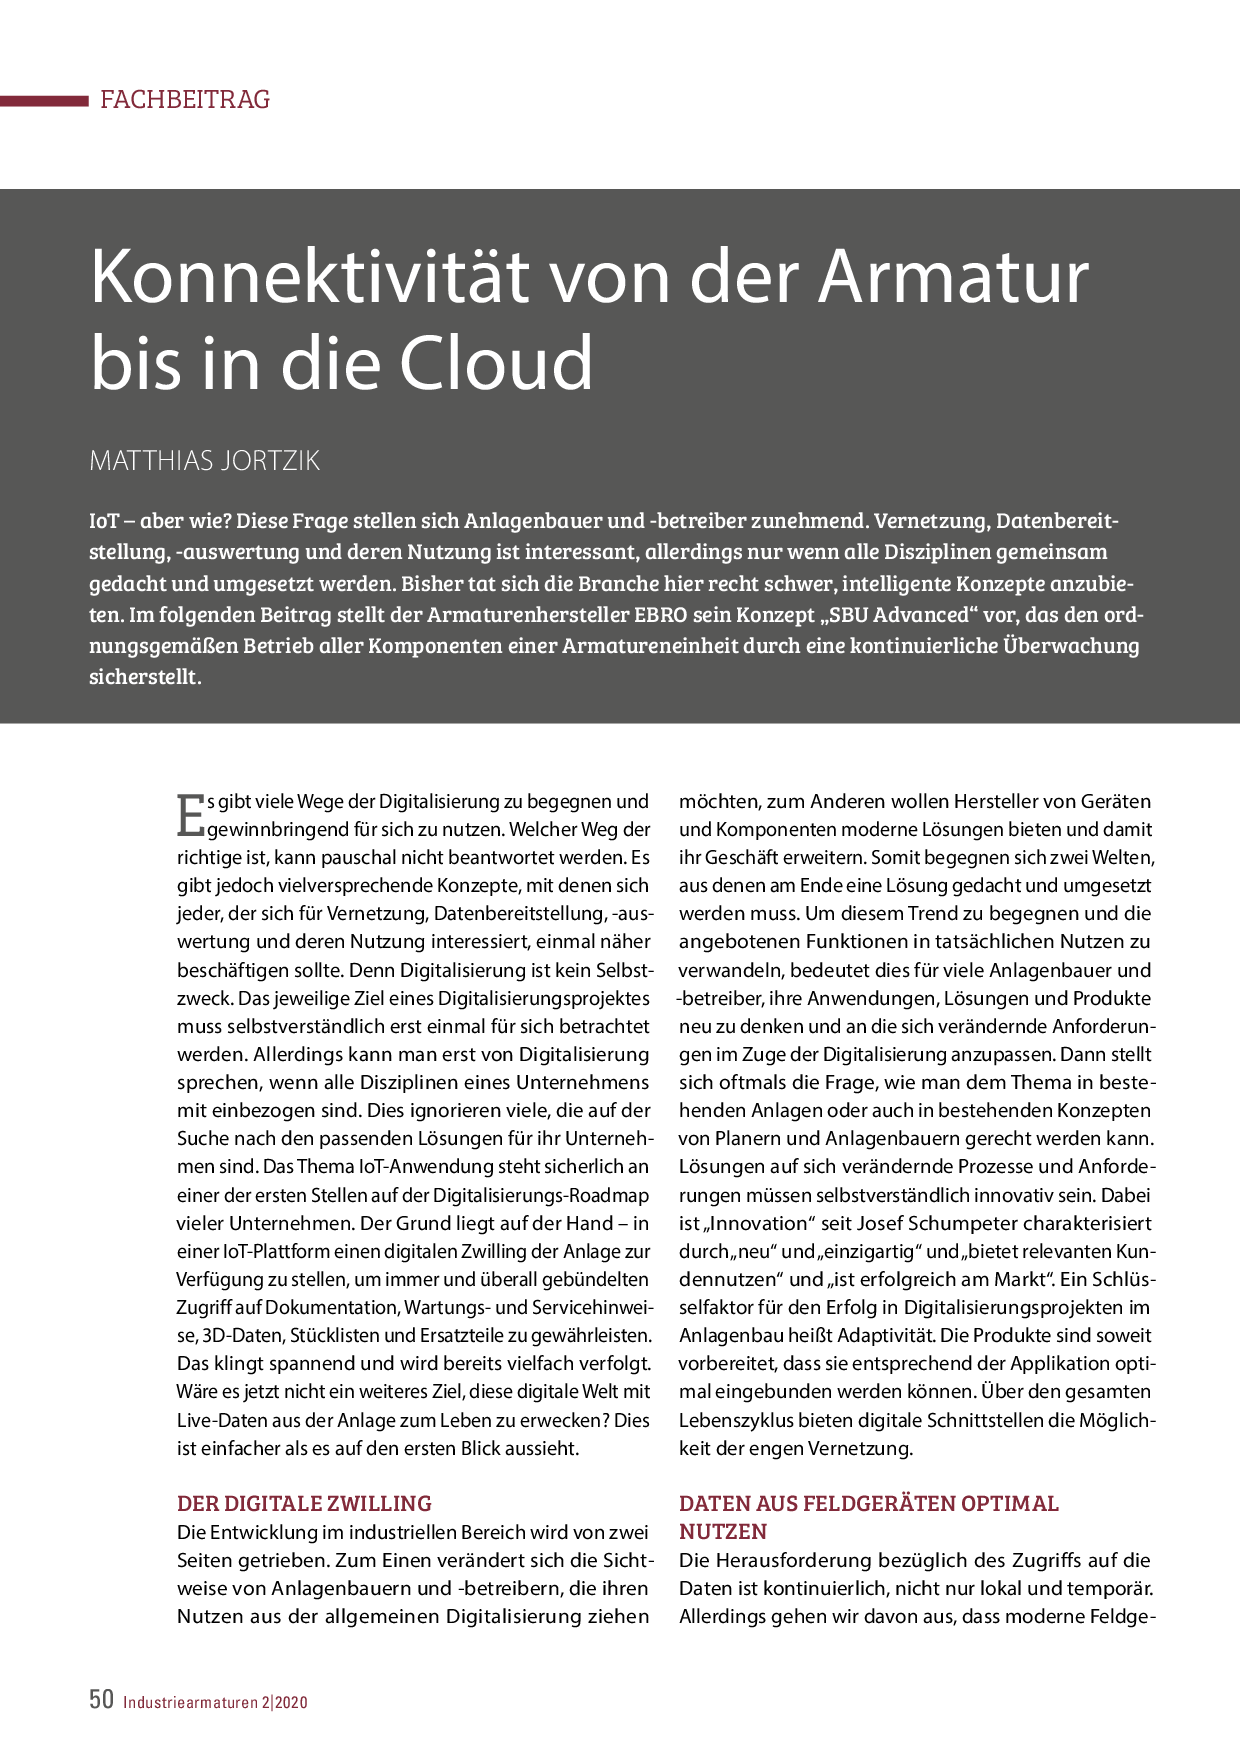 Konnektivität von der Armatur bis in die Cloud